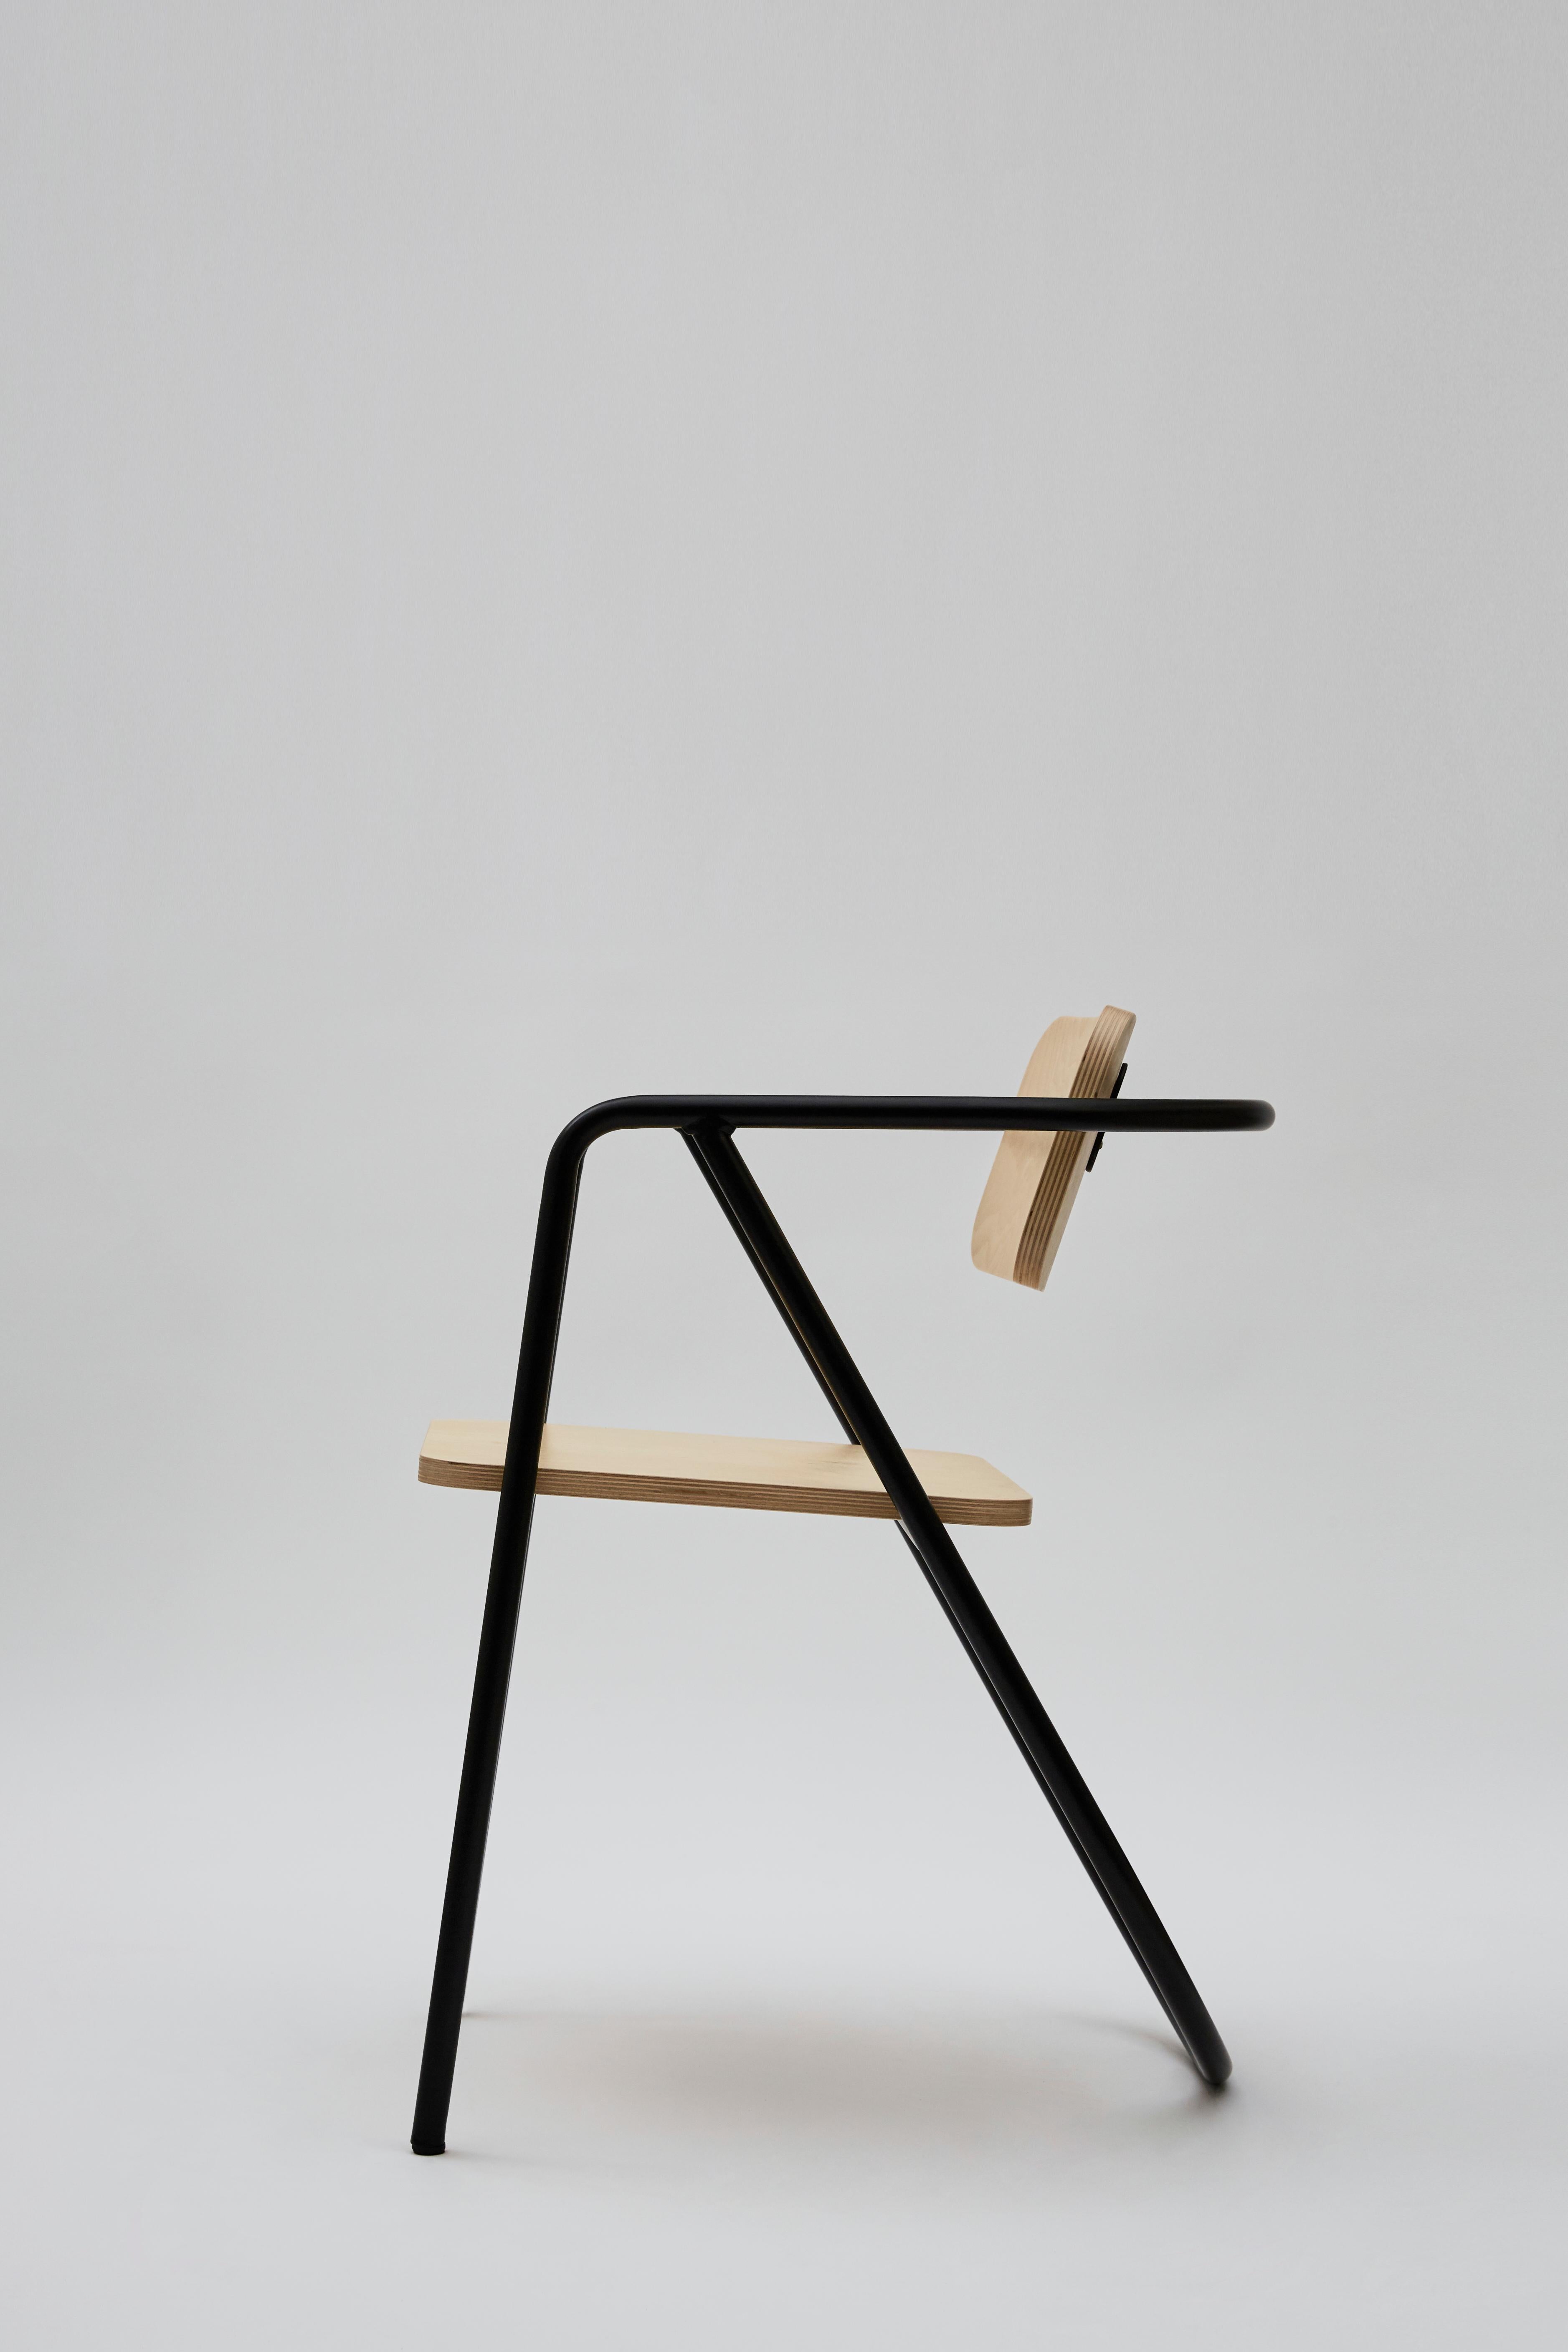 Other La Misciù Chair, Light Wooden & Black For Sale